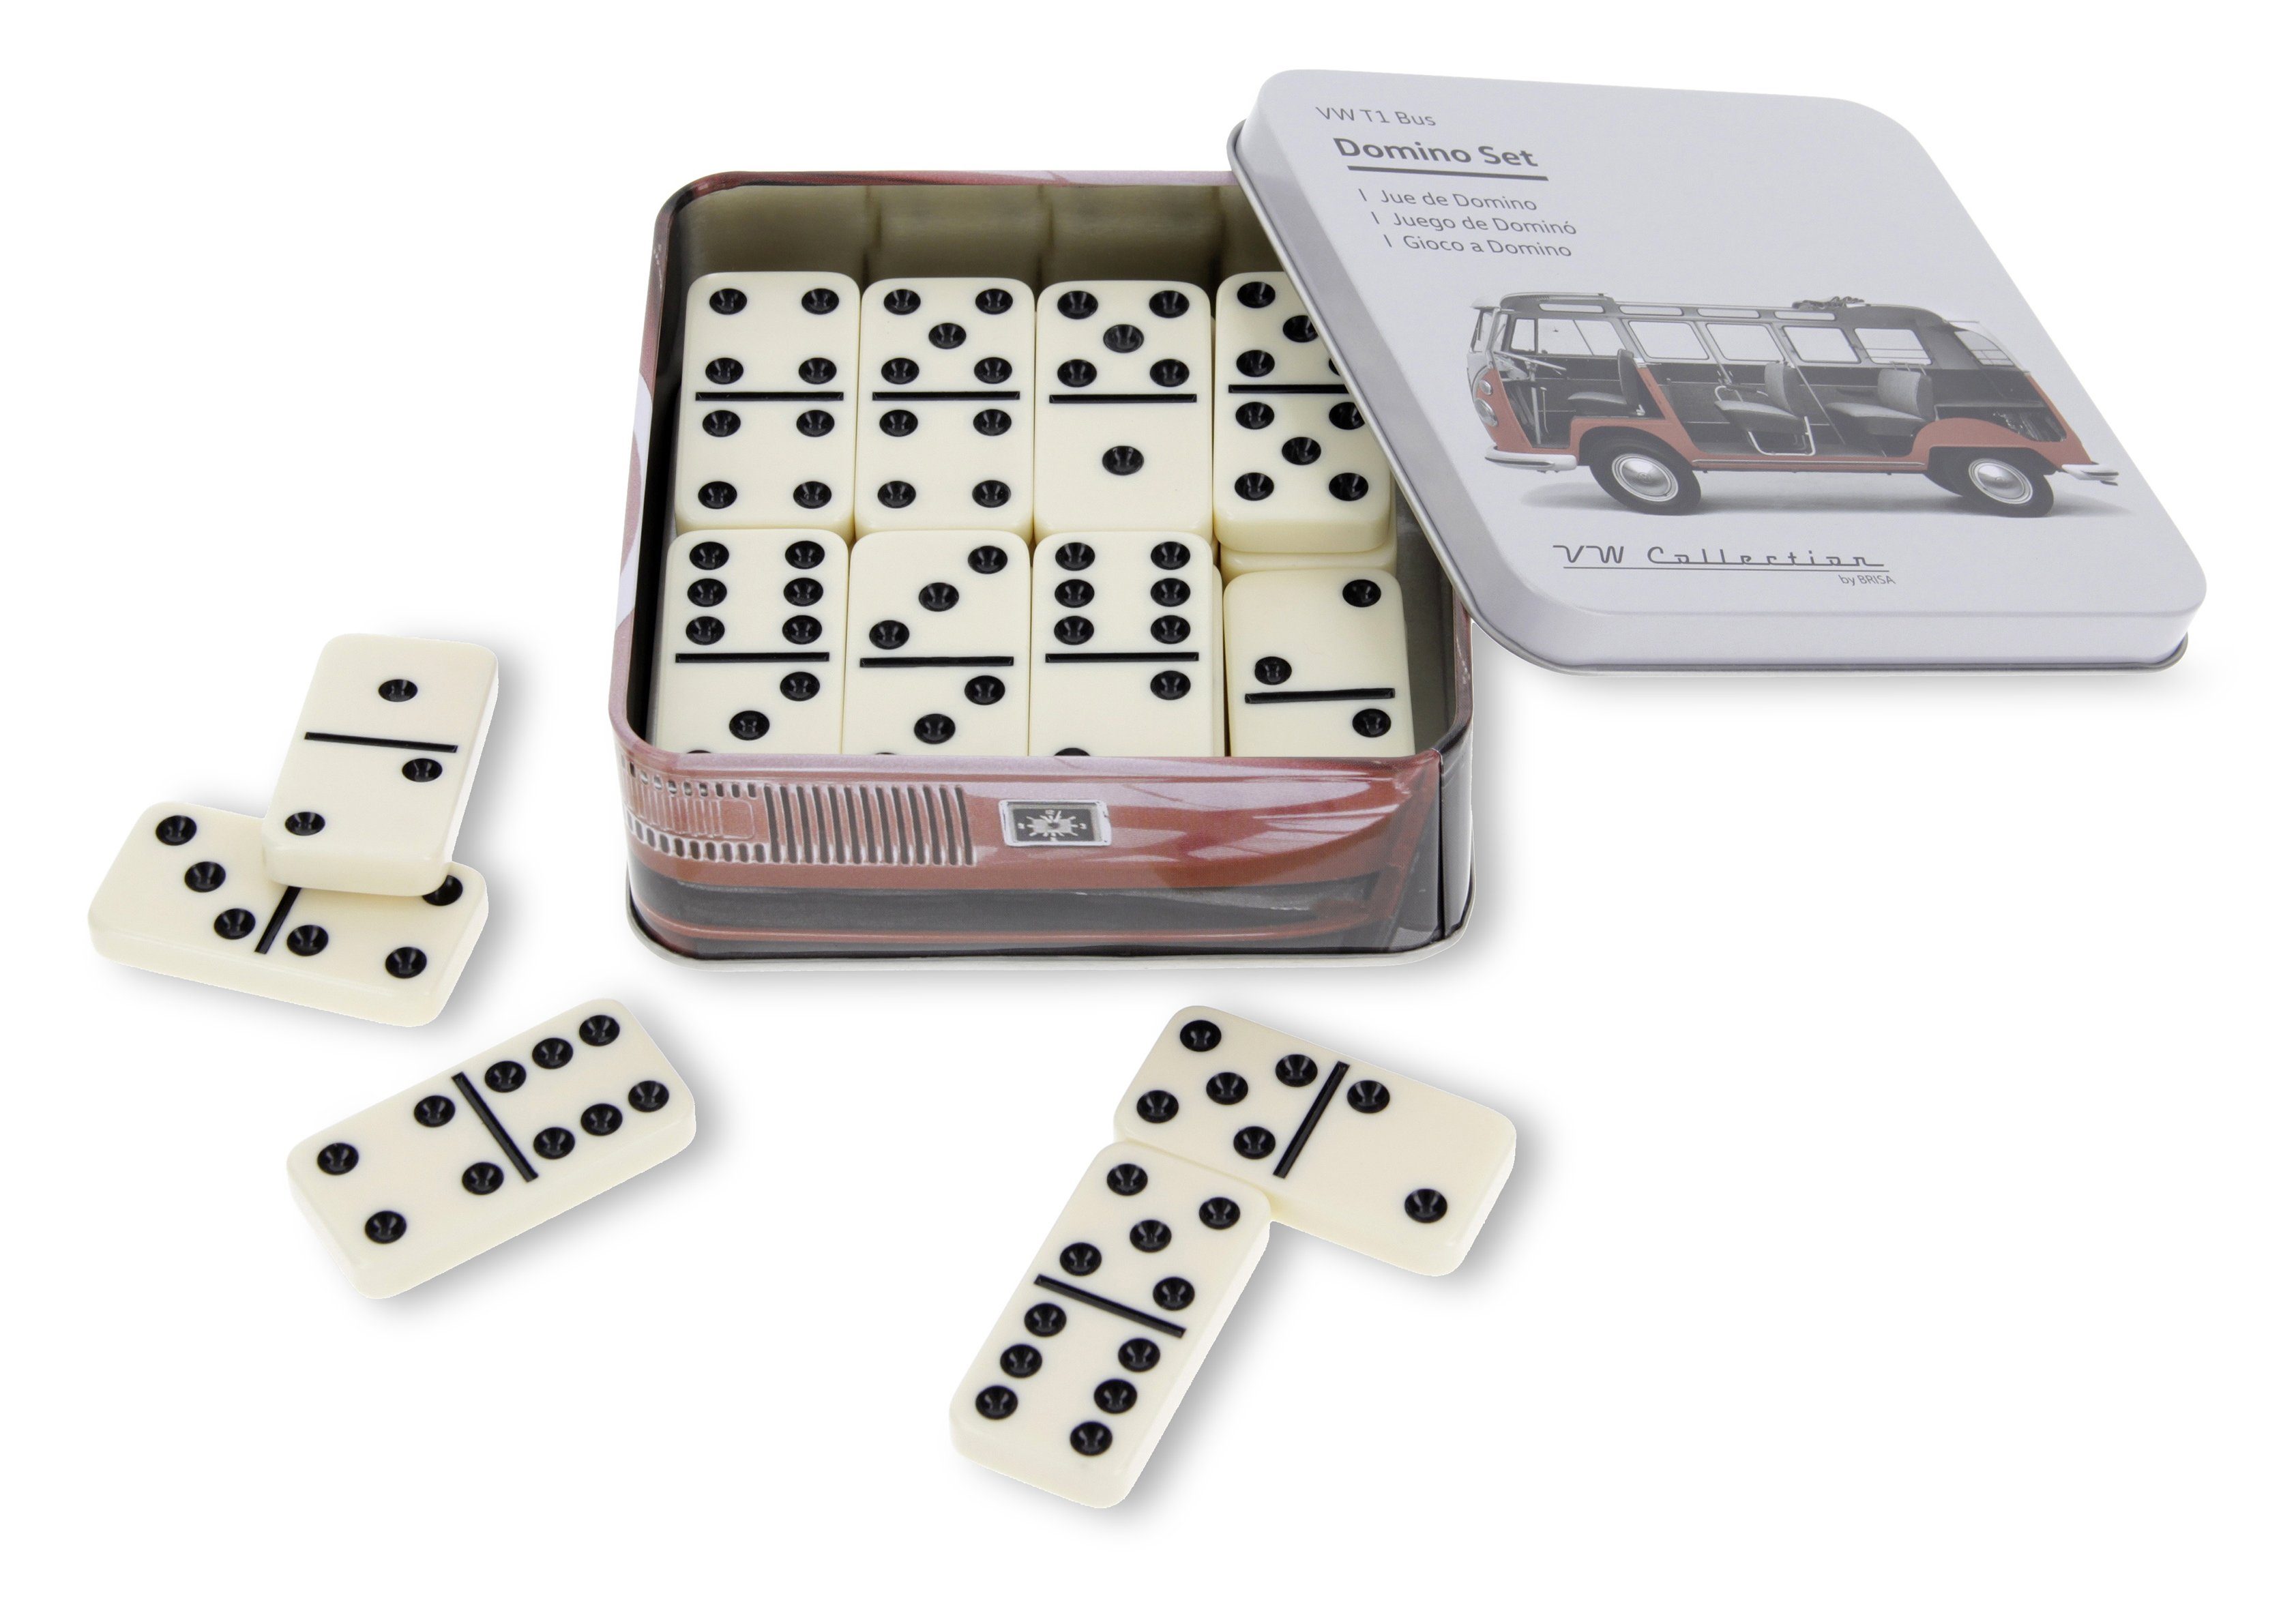 VW Collection by BRISA Spielesammlung, Familienspiel Volkswagen Domino Spielset in Metalldose, Gesellschaftsspiel im T1 Bulli Bus Motiv